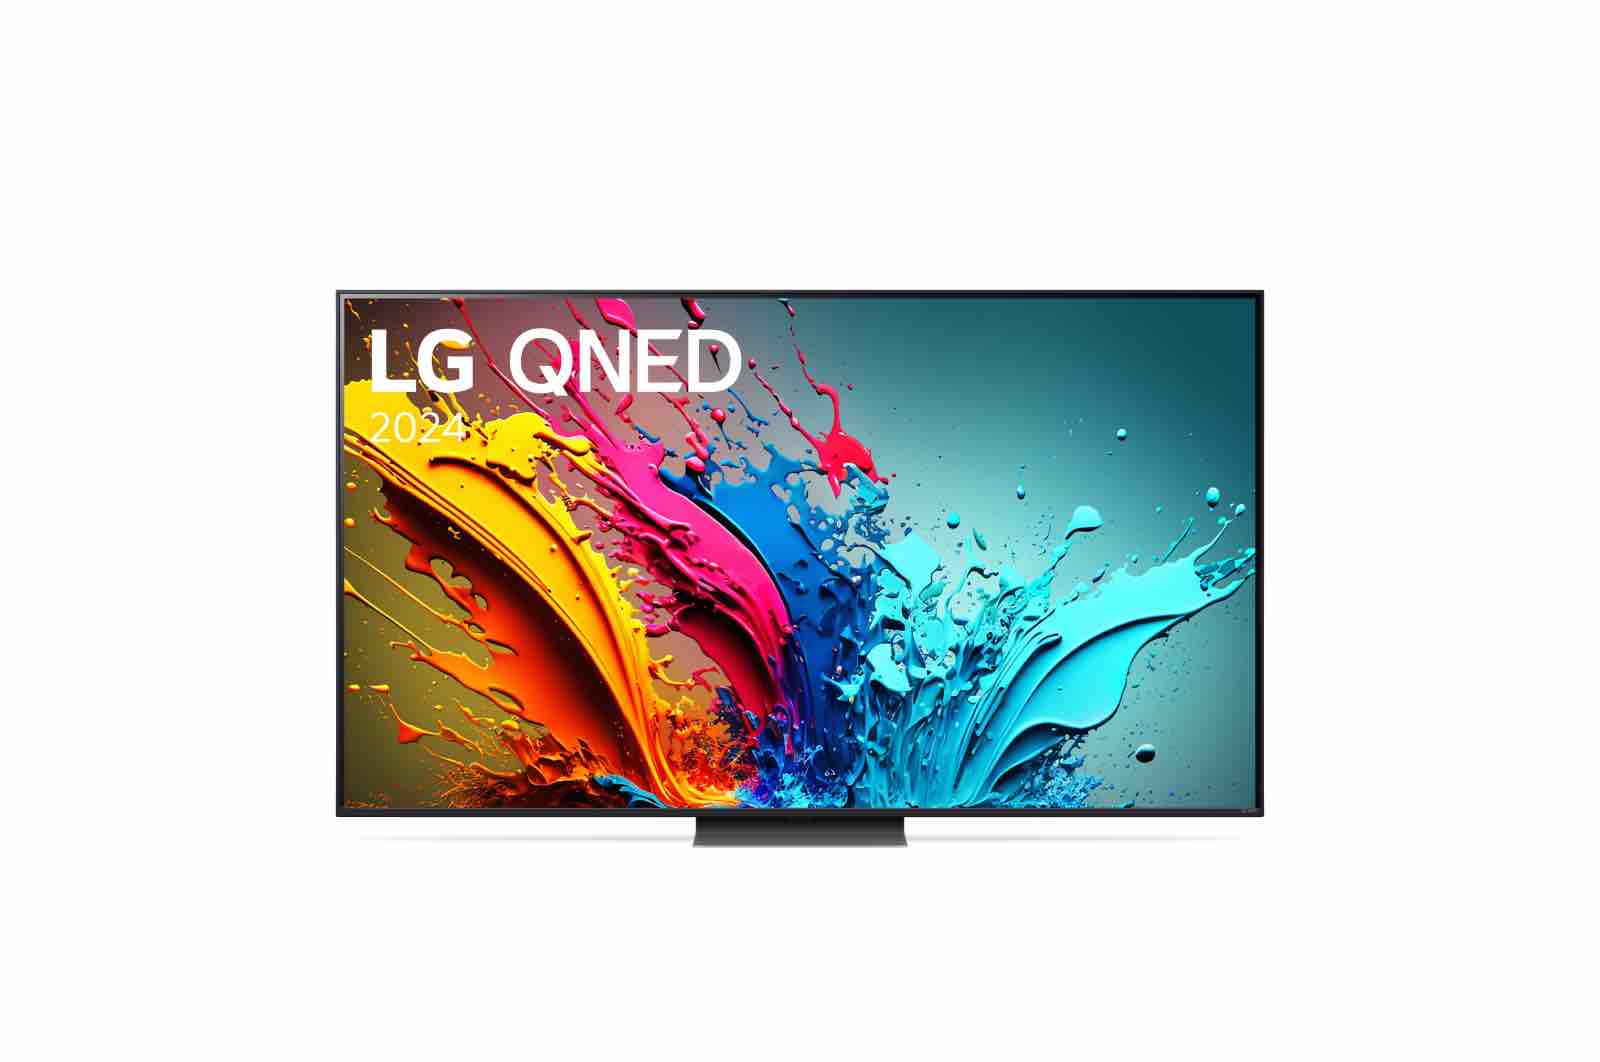 LG TV LG QNED 65 inch 65QNED86TSA, Mặt trước của TV LG QNED, QNED86, 65QNED86TSA